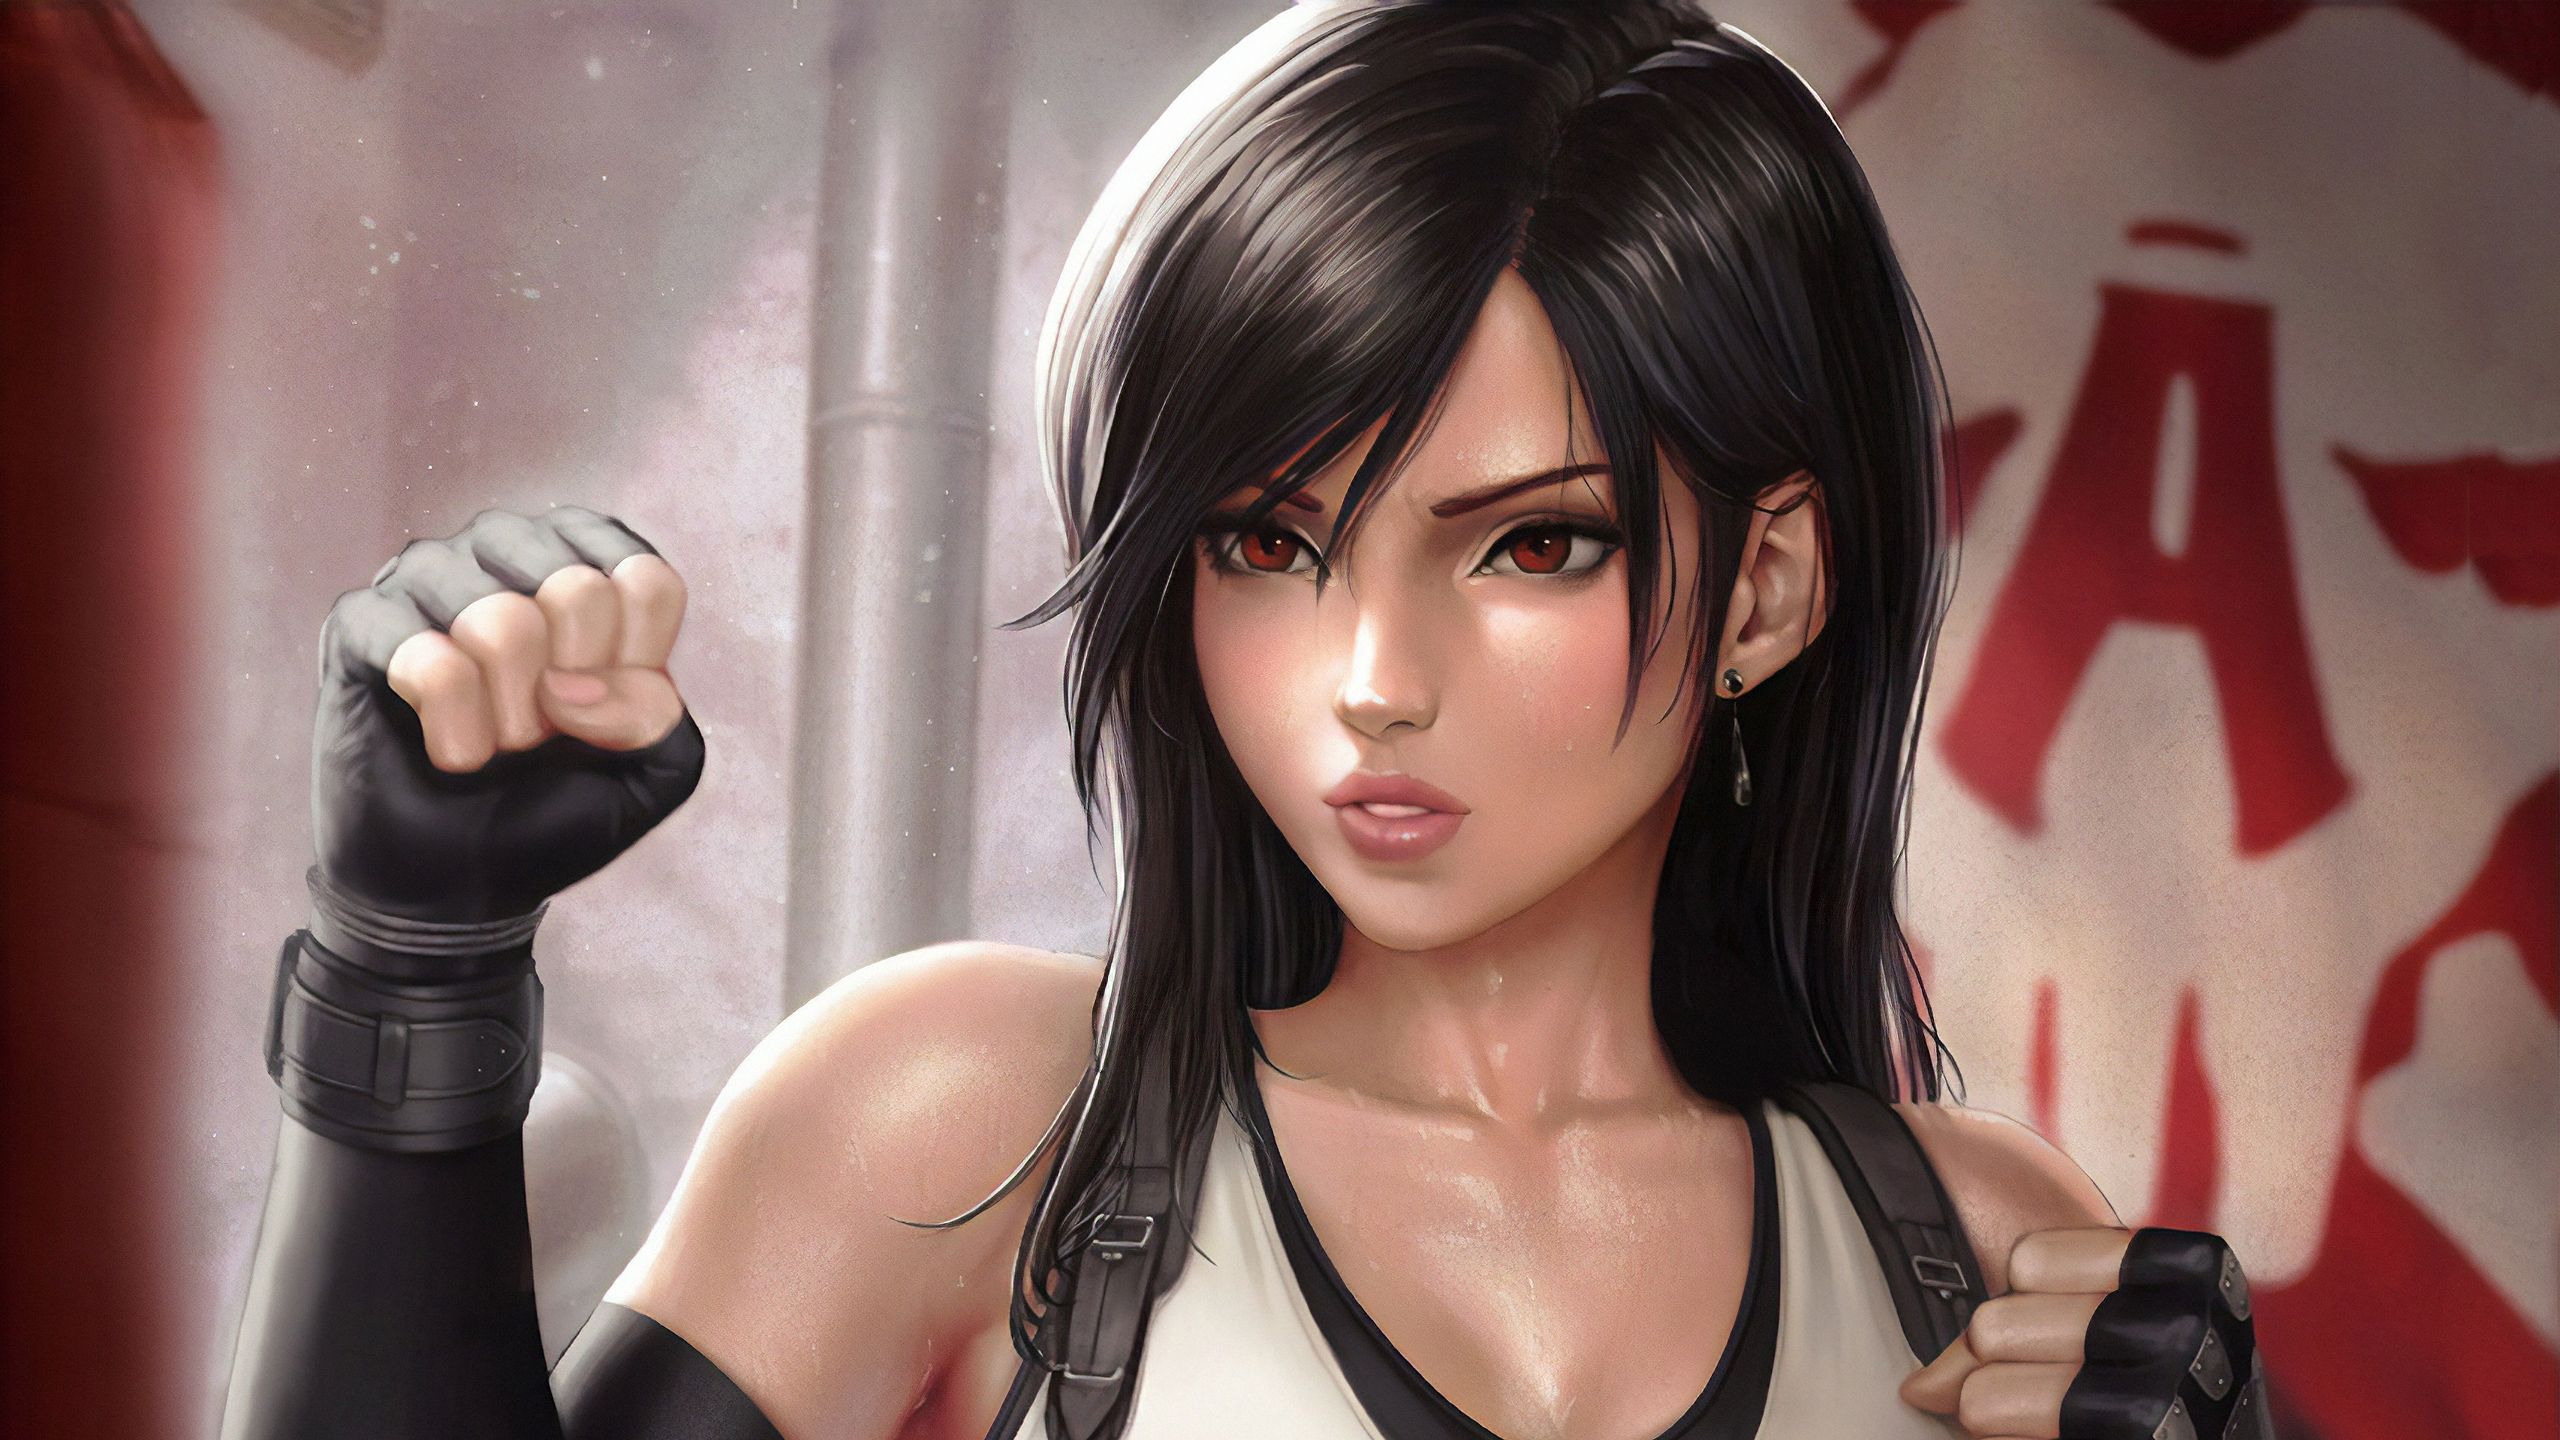 Girl Ready For Fight, HD Artist, 4k Wallpaper, Image